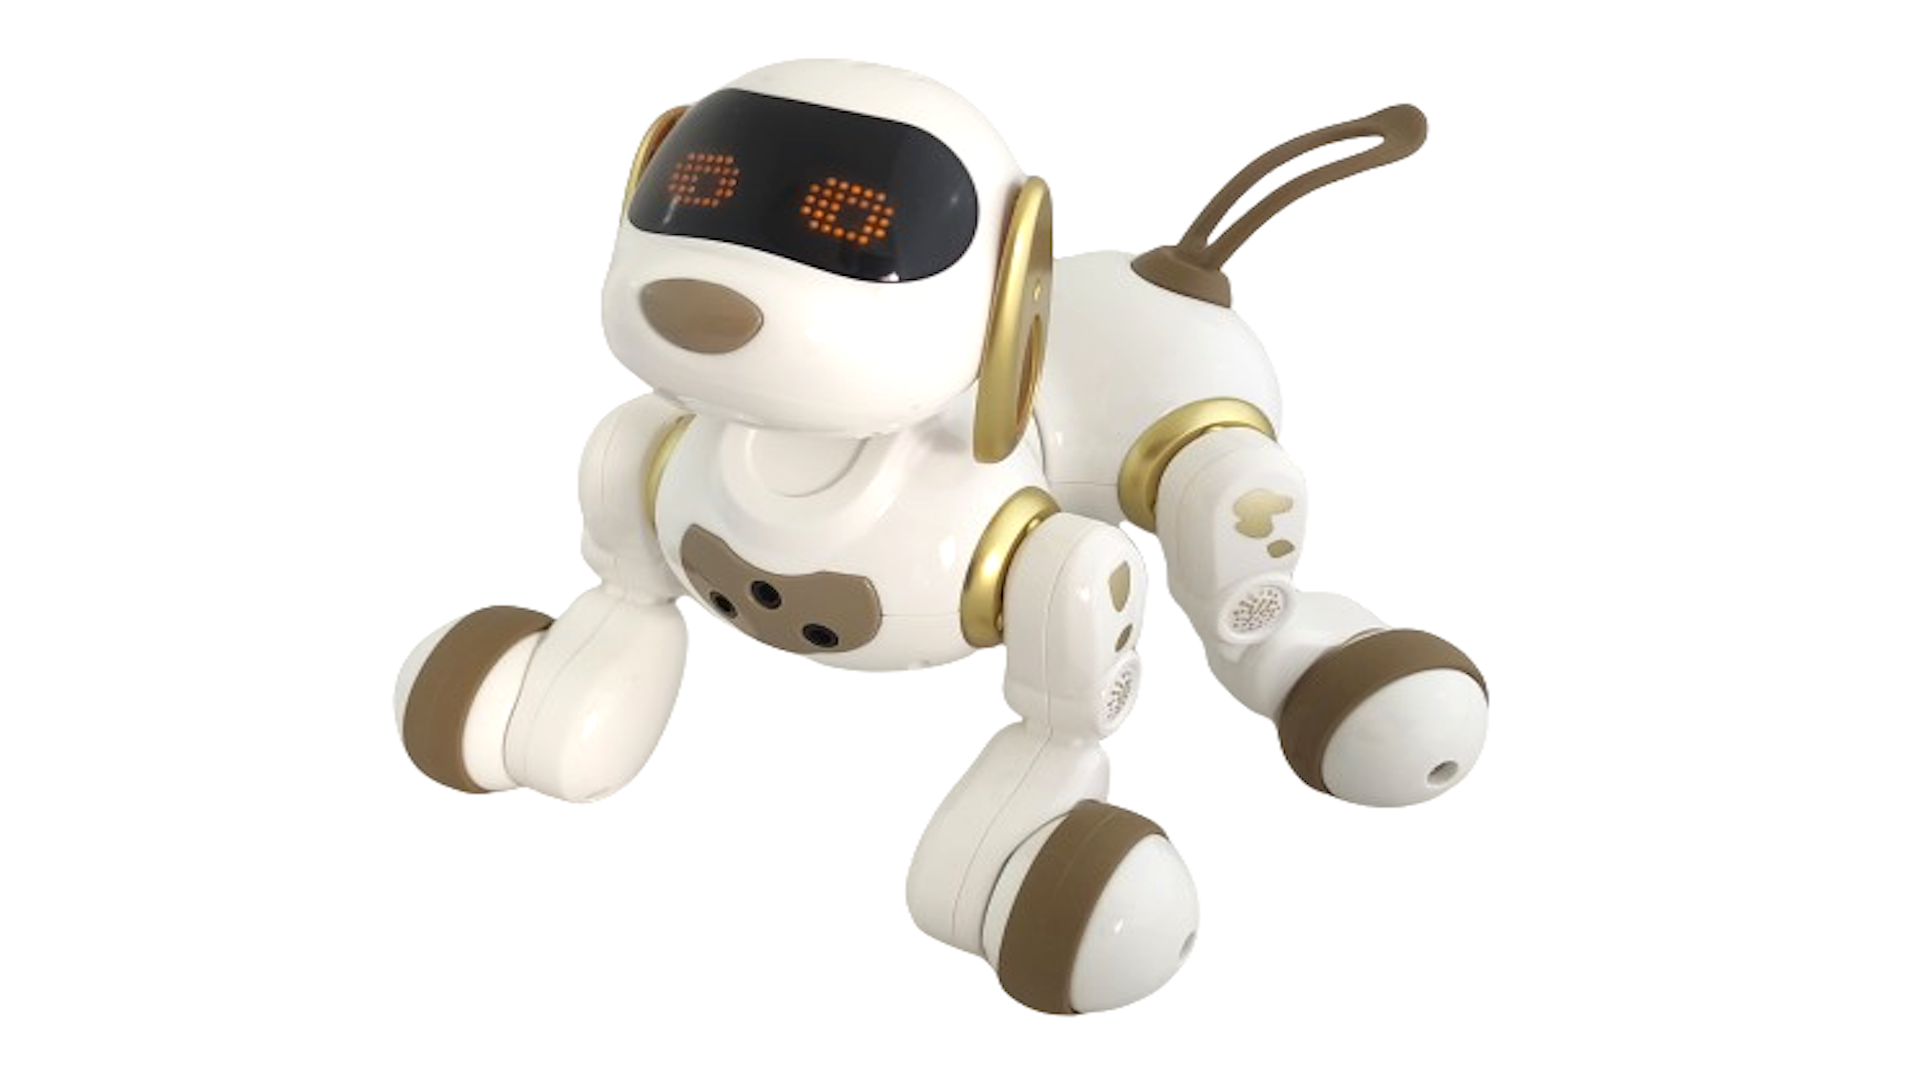 Интерактивная радиоуправляемая собака робот Smart Robot Dog Dexterity AMWELL AW-18011-GOLD робот конструктор на солнечной батарее 14в1 solar robot